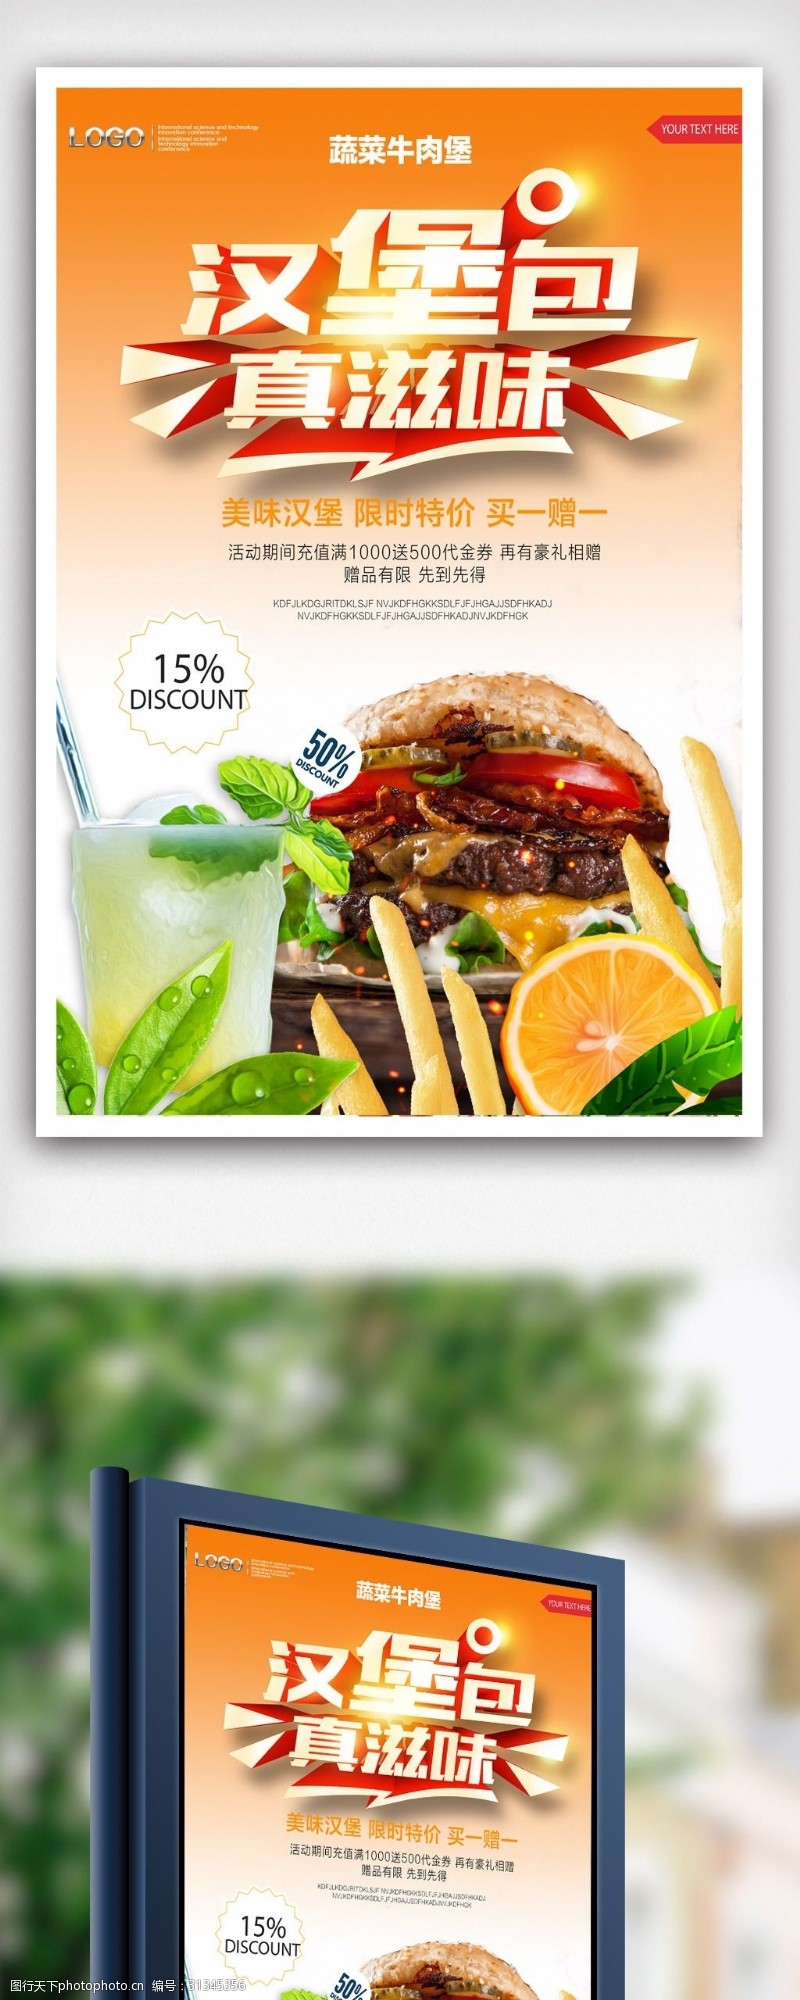 白色感兴趣蔬菜牛肉汉堡宣传海报模版.psd